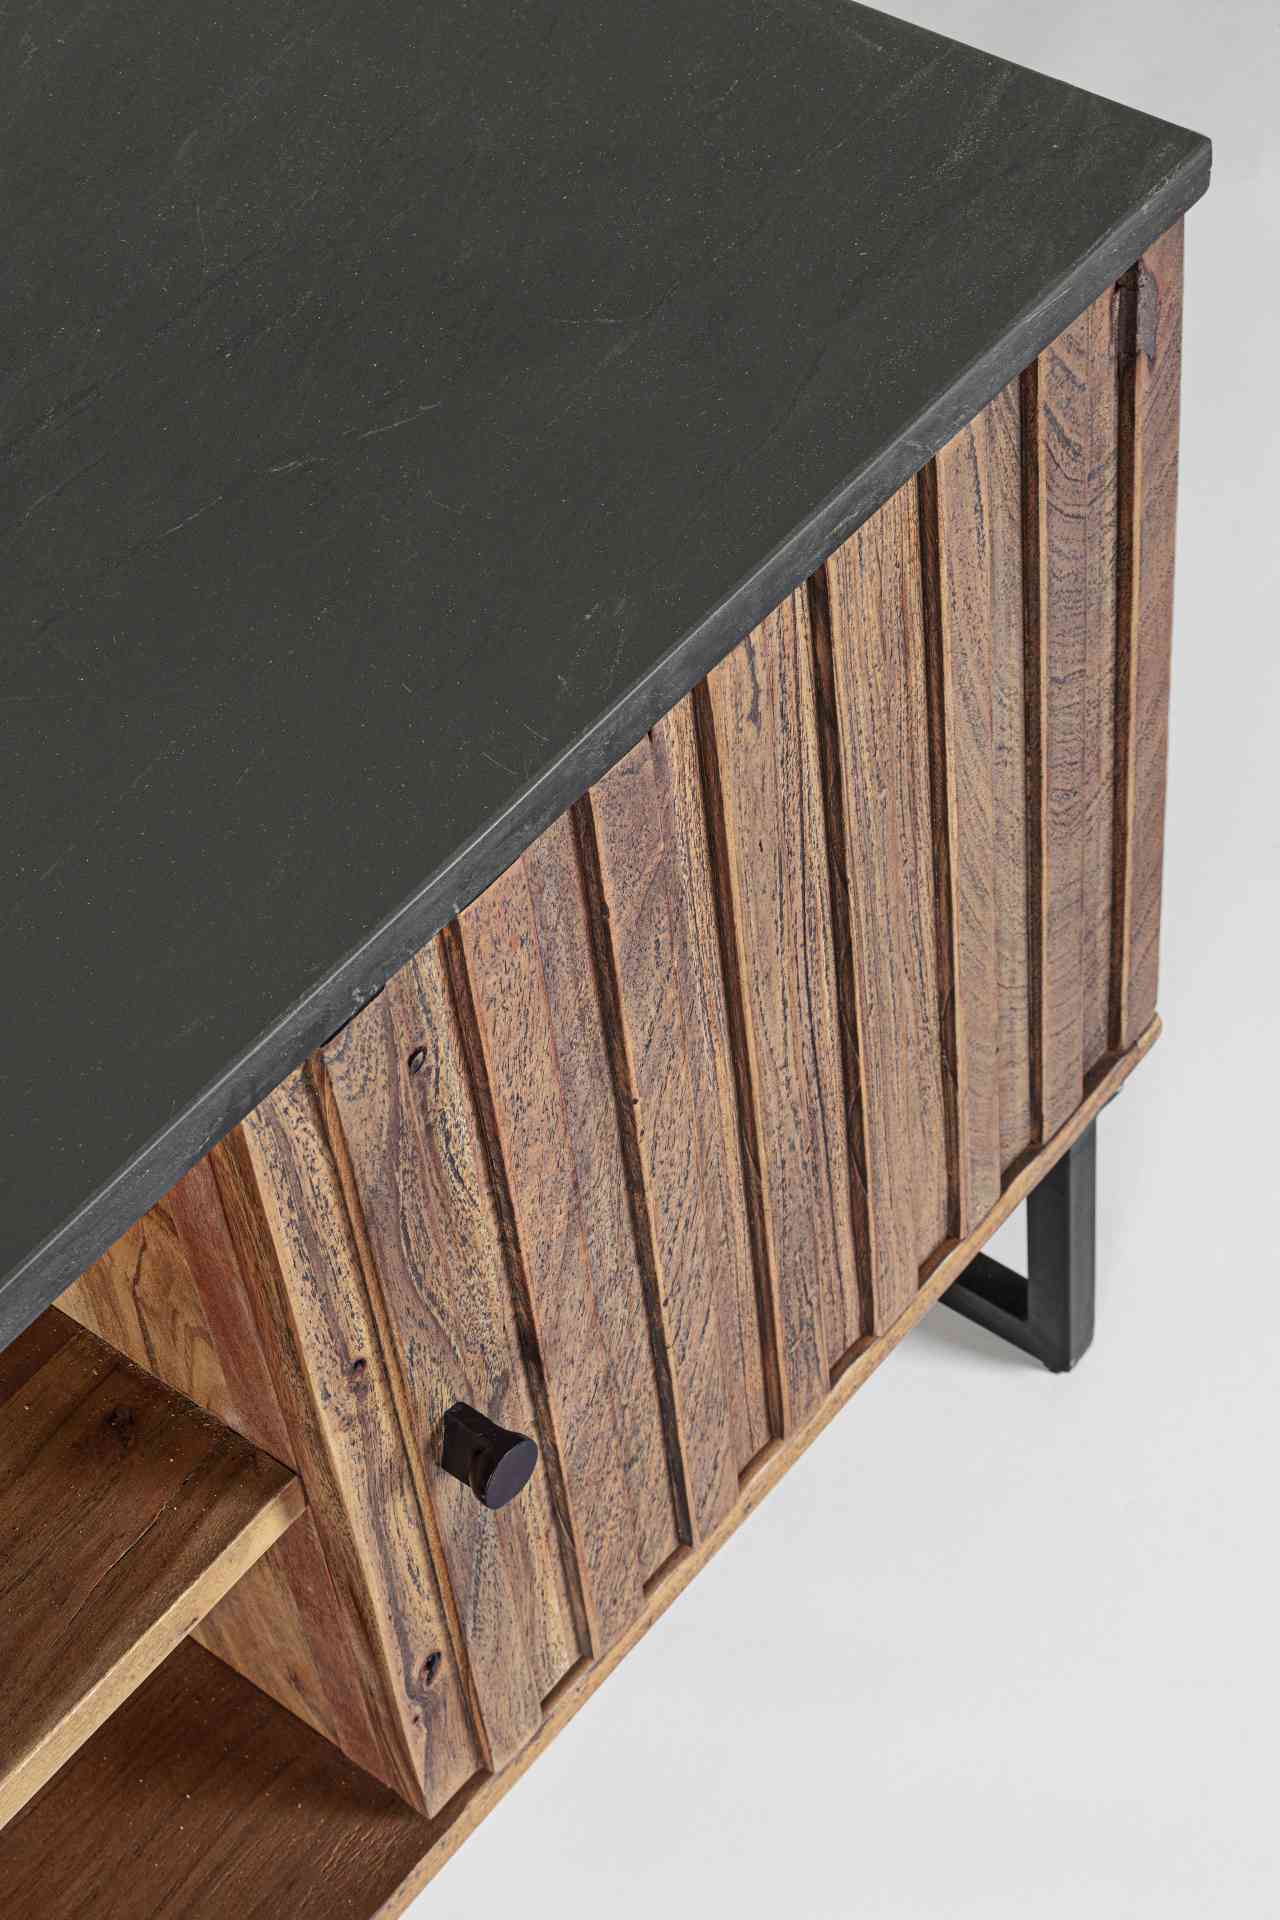 Das TV Board Norfolk überzeugt mit seinem klassischen Design. Gefertigt wurde es aus Akazienholz, welches einen natürlichen Farbton besitzt. Das Gestell ist aus Metall und hat eine schwarze Farbe. Die Oberflächenplatte ist aus Marmor. Das TV Board verfügt